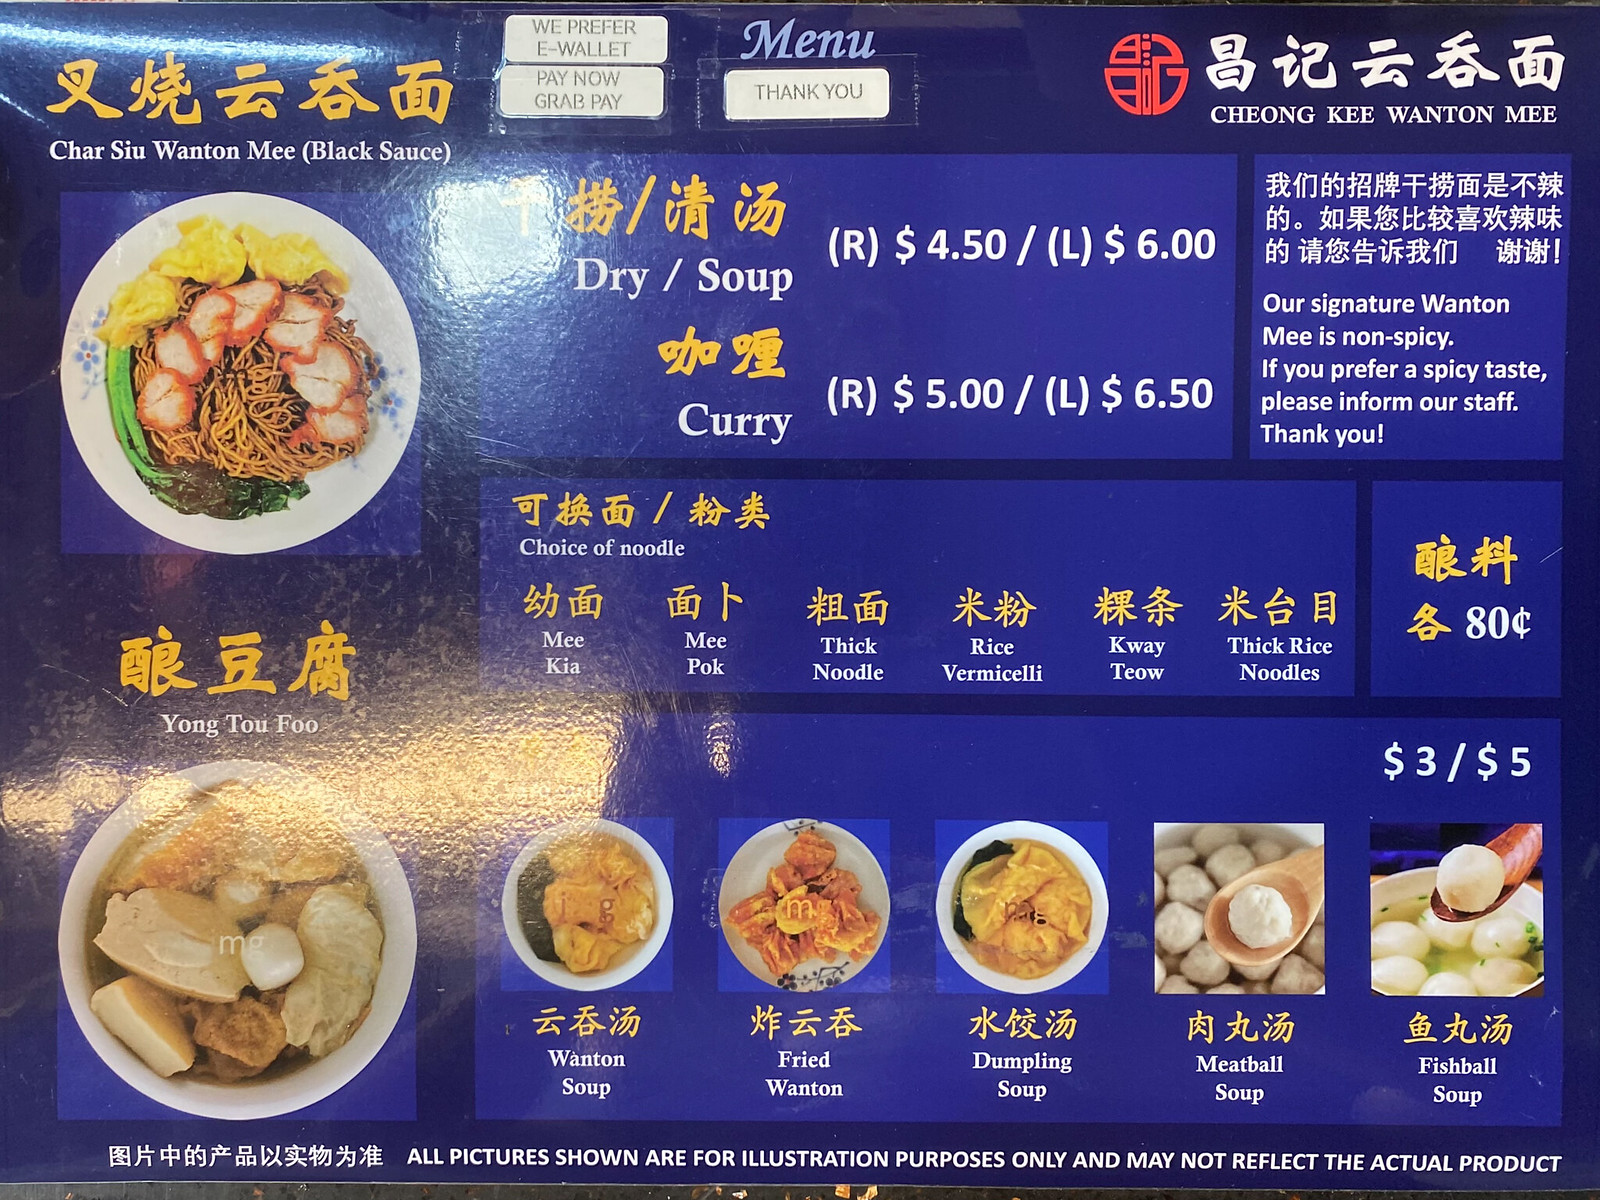 Cheong Kee Wanton Mee - menu